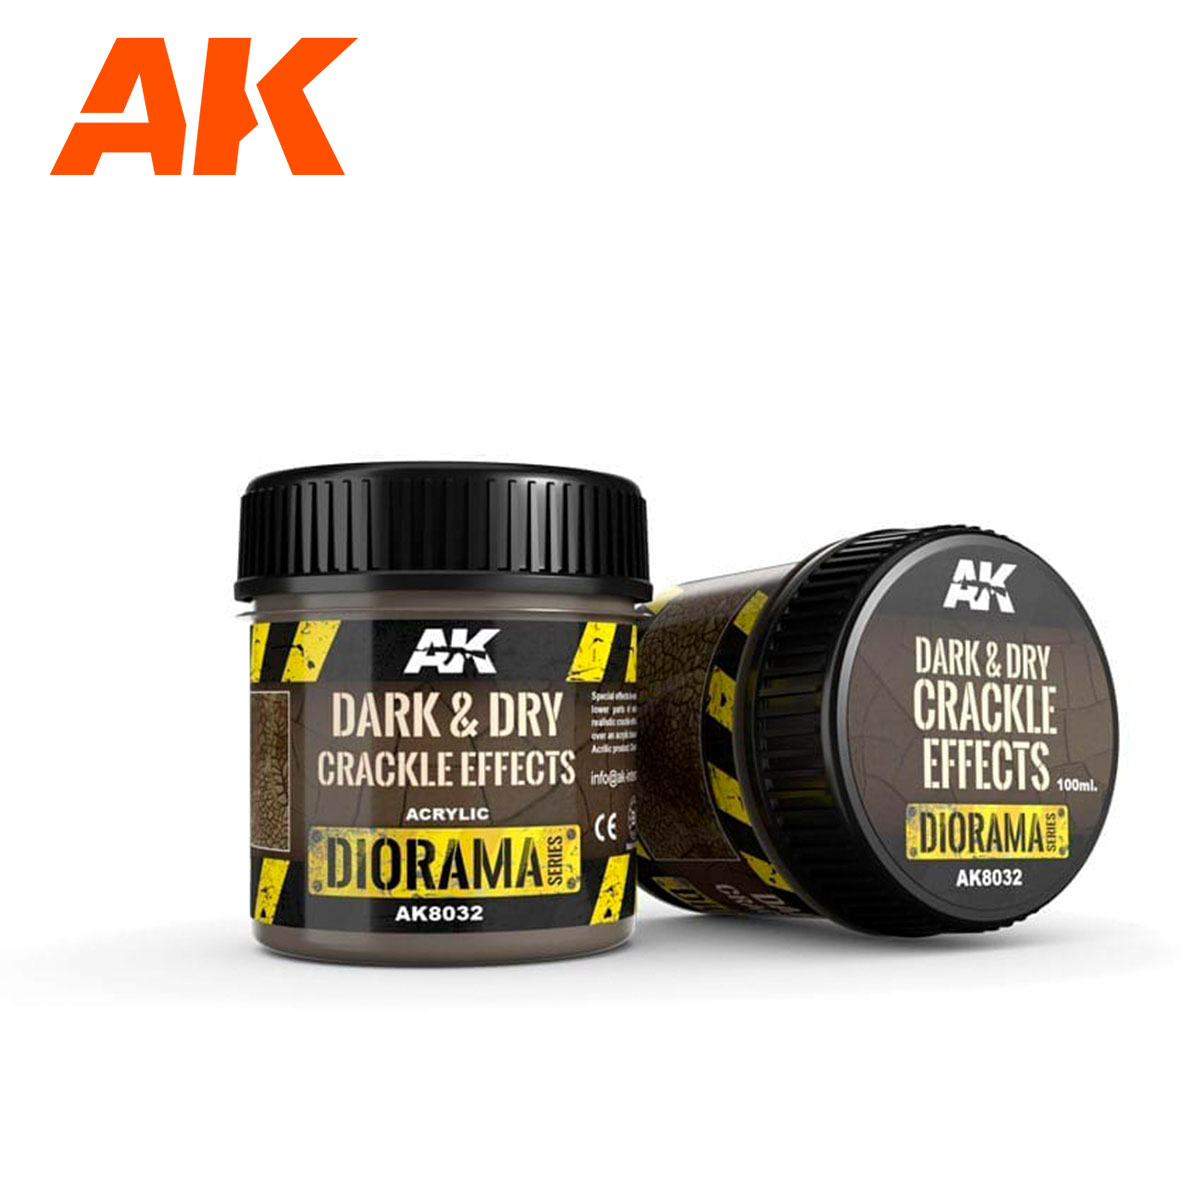 AK8032 Dark & Dry Crackle Effects (100mL) (Acrylic)